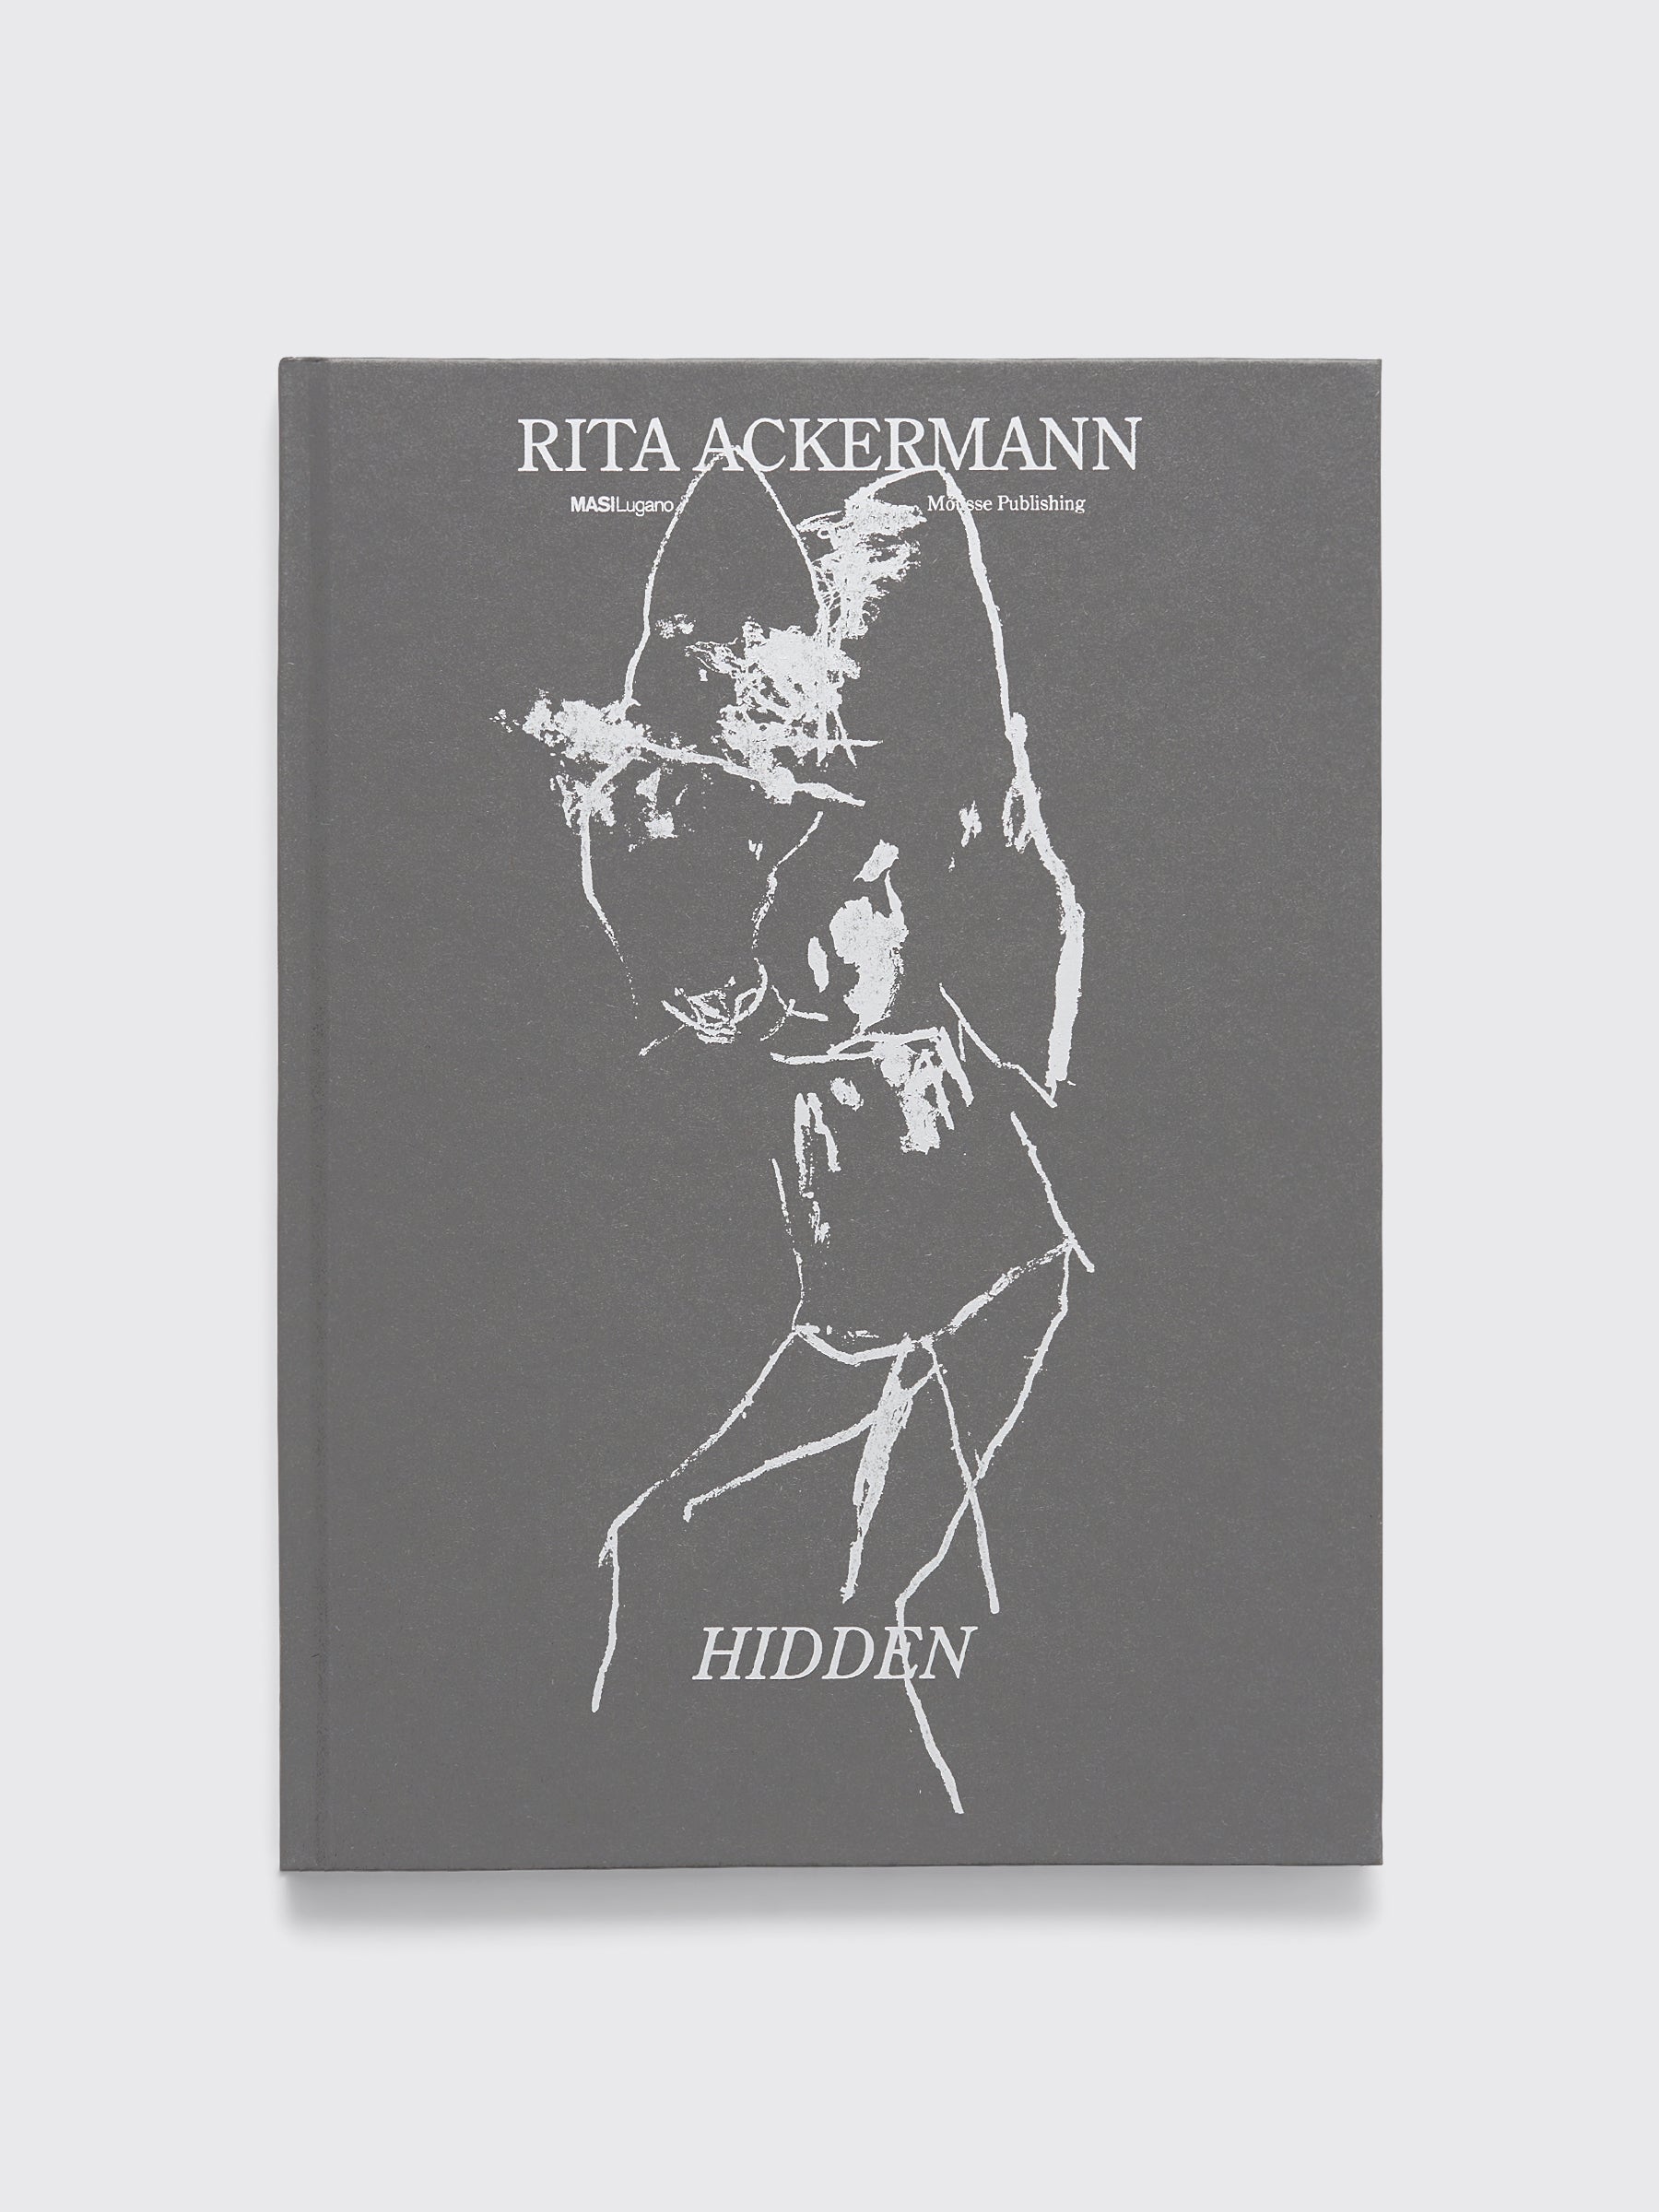 Hidden: Rita Ackermann